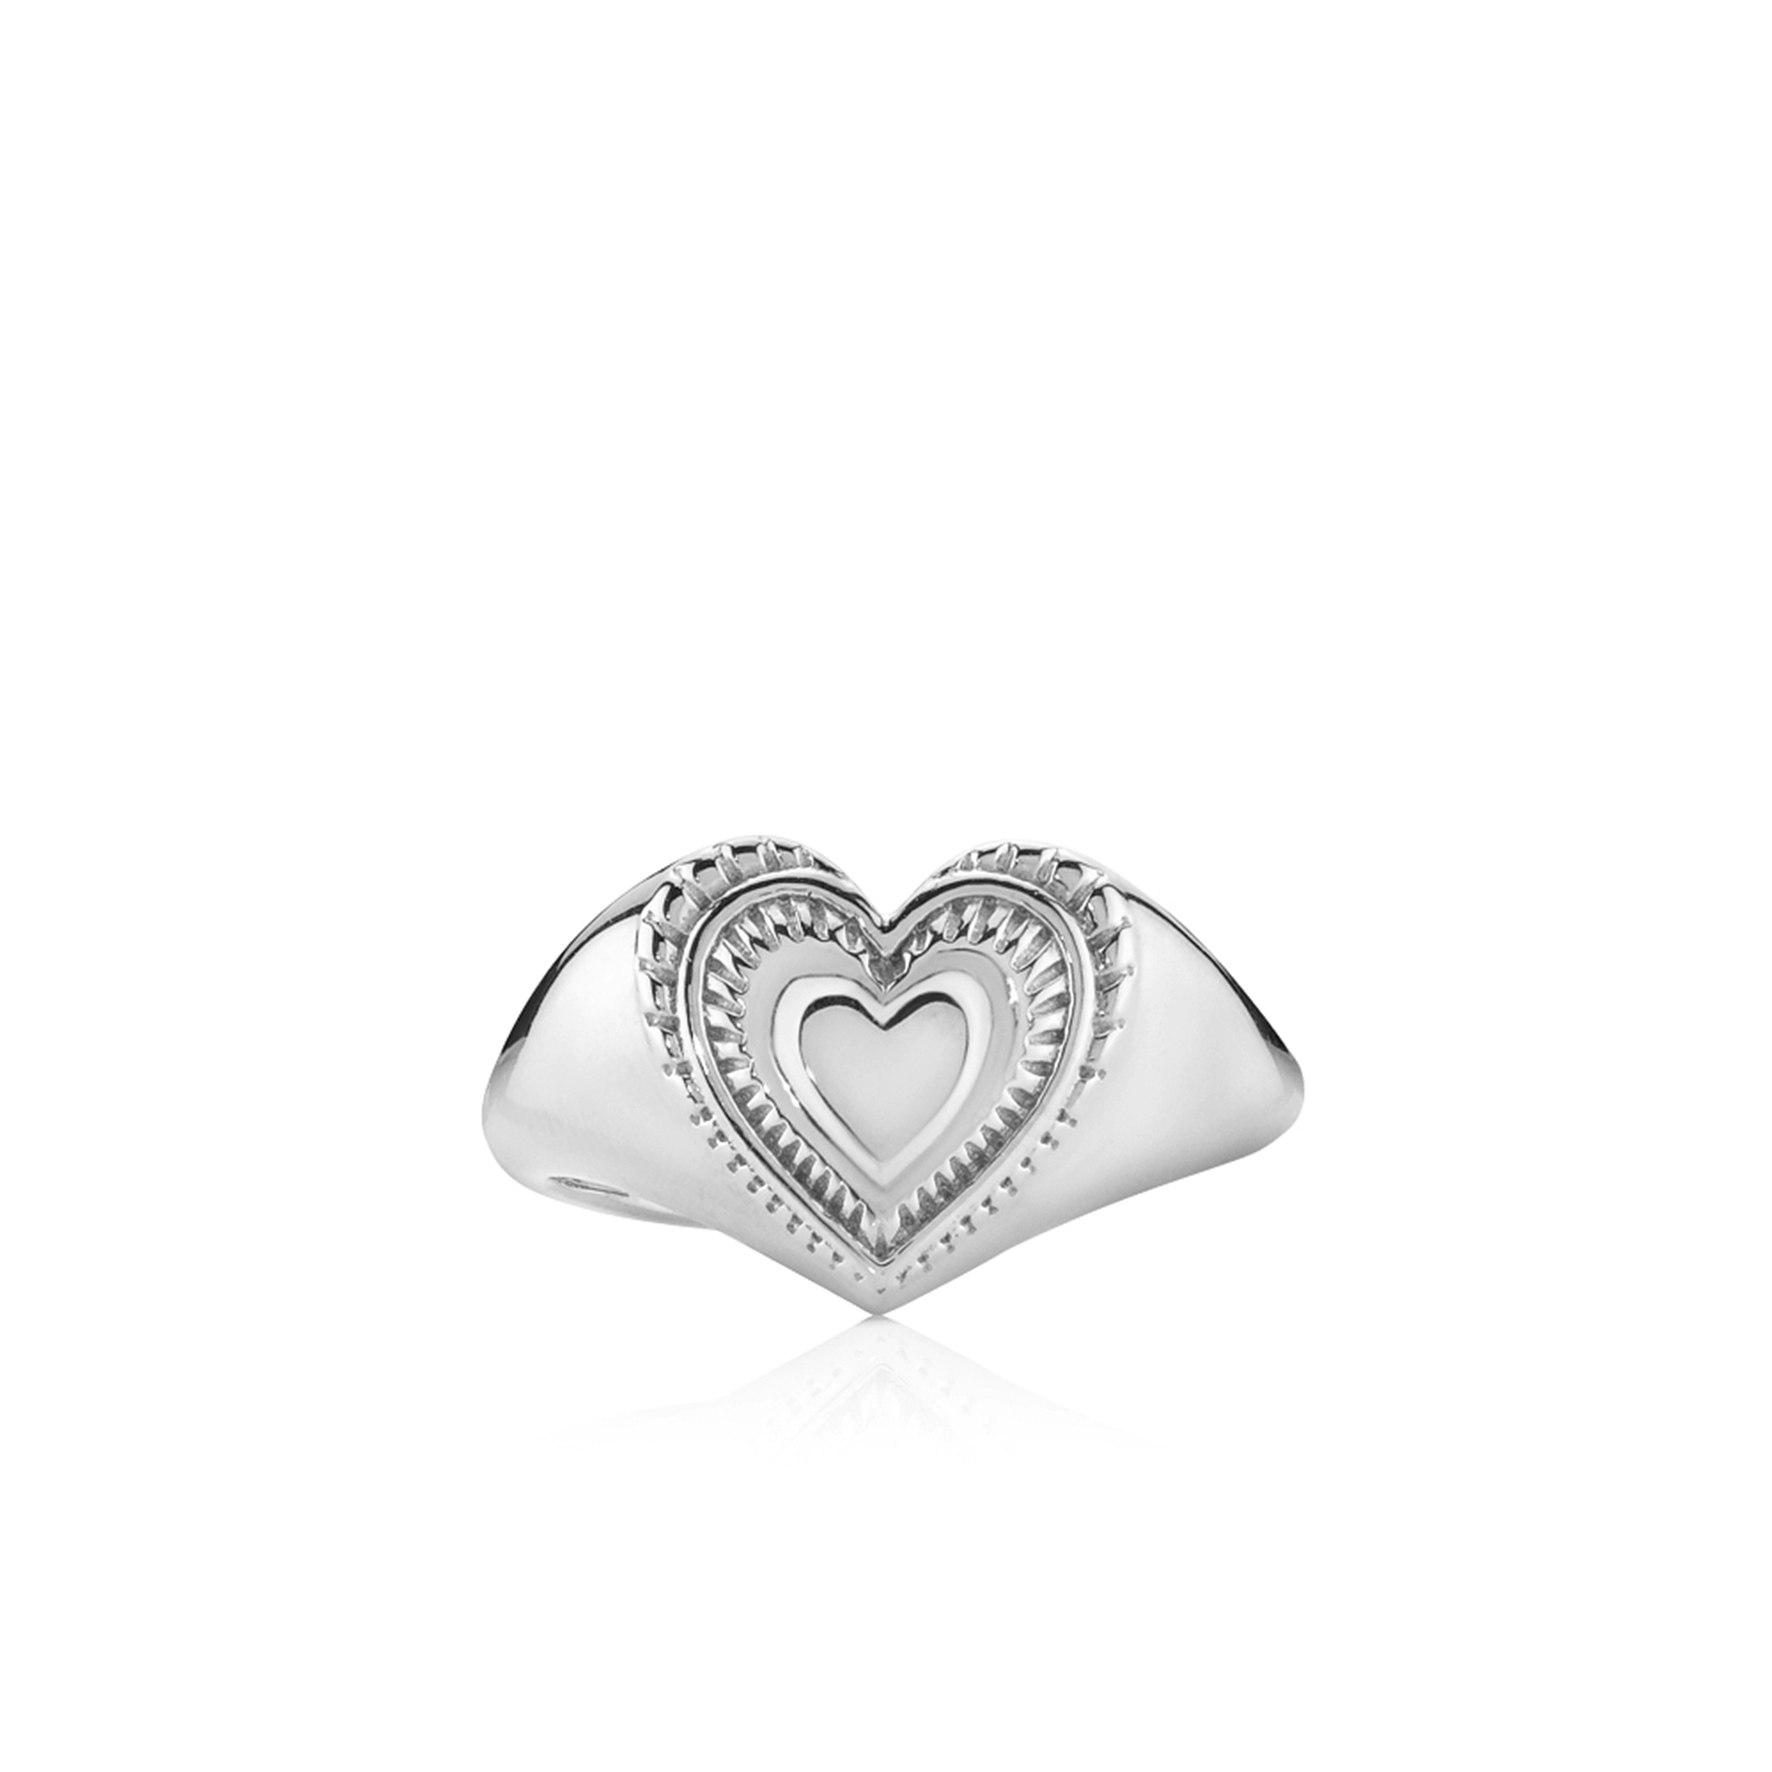 Anne-Sofie Krab x Sistie Ring from Sistie in Silver Sterling 925